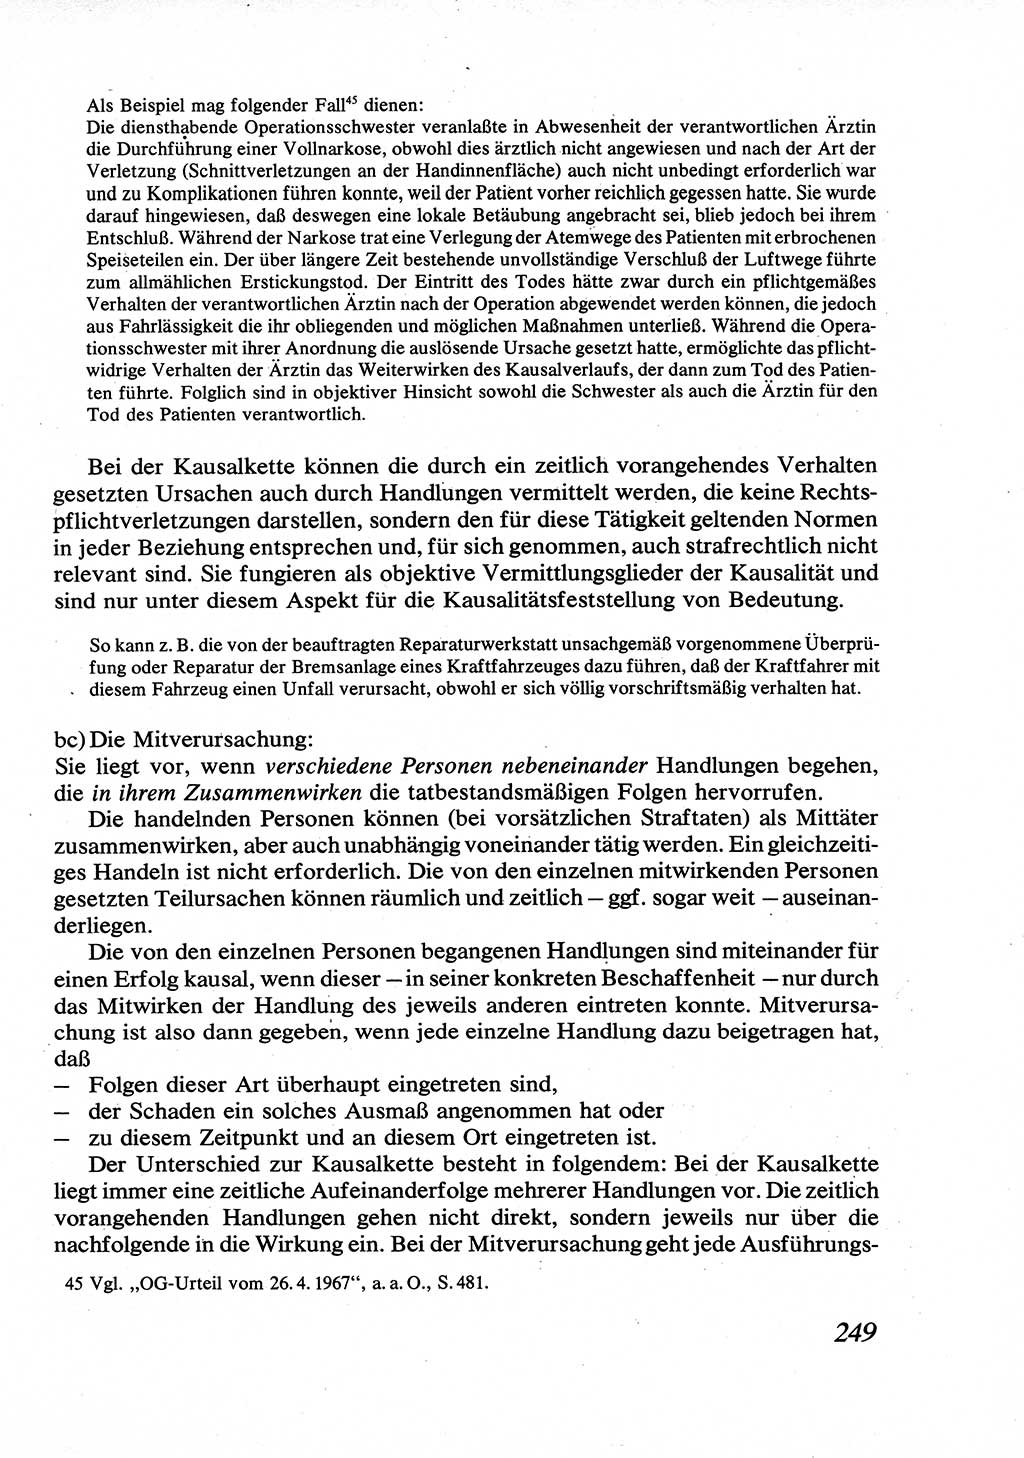 Strafrecht [Deutsche Demokratische Republik (DDR)], Allgemeiner Teil, Lehrbuch 1976, Seite 249 (Strafr. DDR AT Lb. 1976, S. 249)